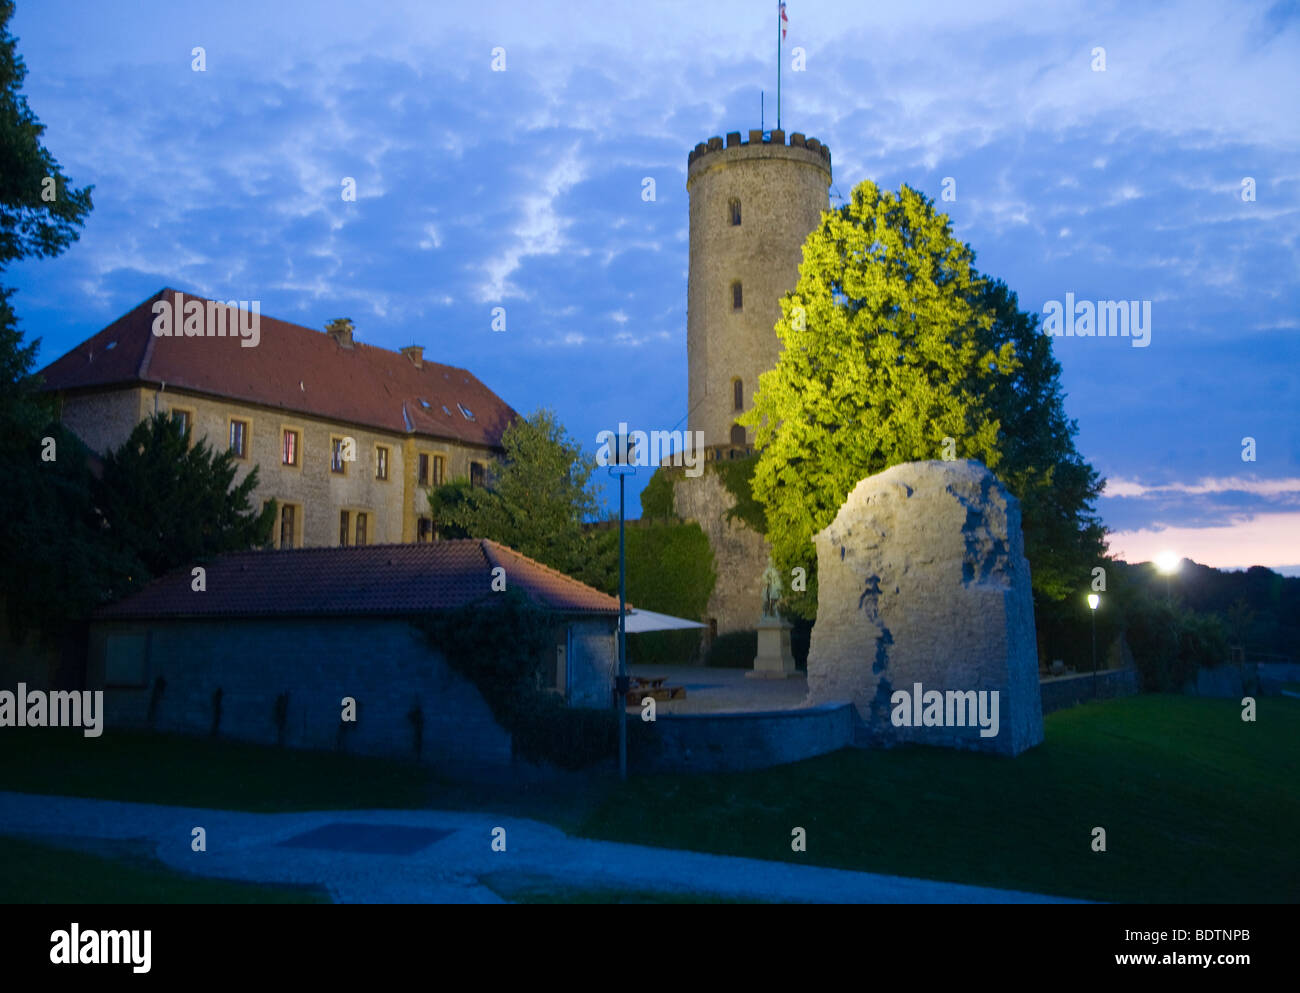 sparrenburg bei nacht, bielefeld, deutschland, sparrenberg castle at night, bielefeld, germany Stock Photo